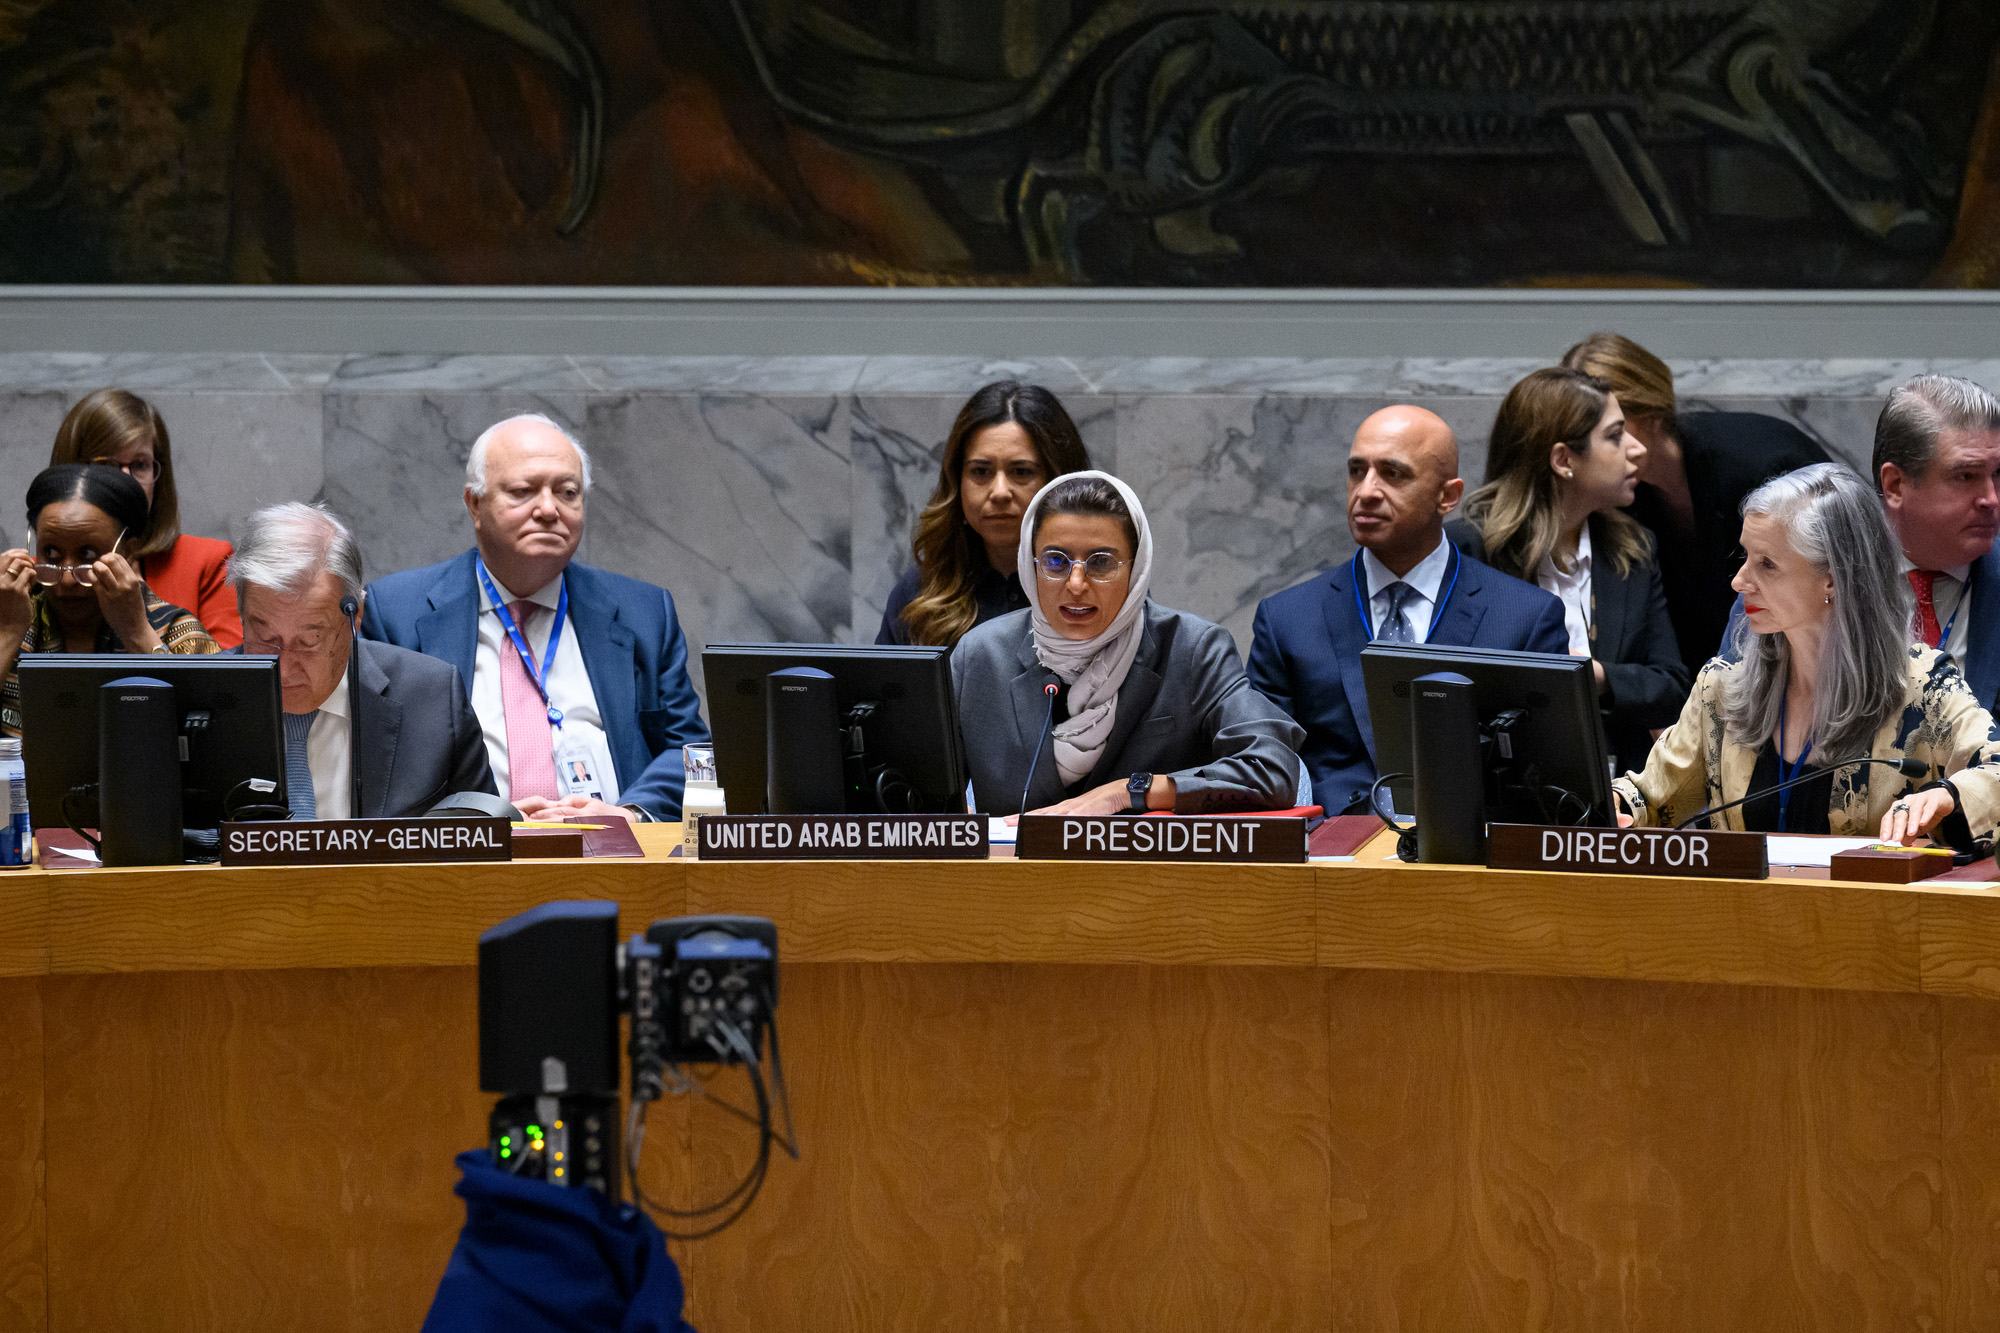 السيدة نورة بنت محمد الكعبي وزيرة الدولة في وزارة الخارجية في دولة الإمارات العربية المتحدة ترأس جلسة مجلس الأمن على المستوى الوزاري حول "قيم الأخوة الإنسانية في تعزيز السلام واستدامته"